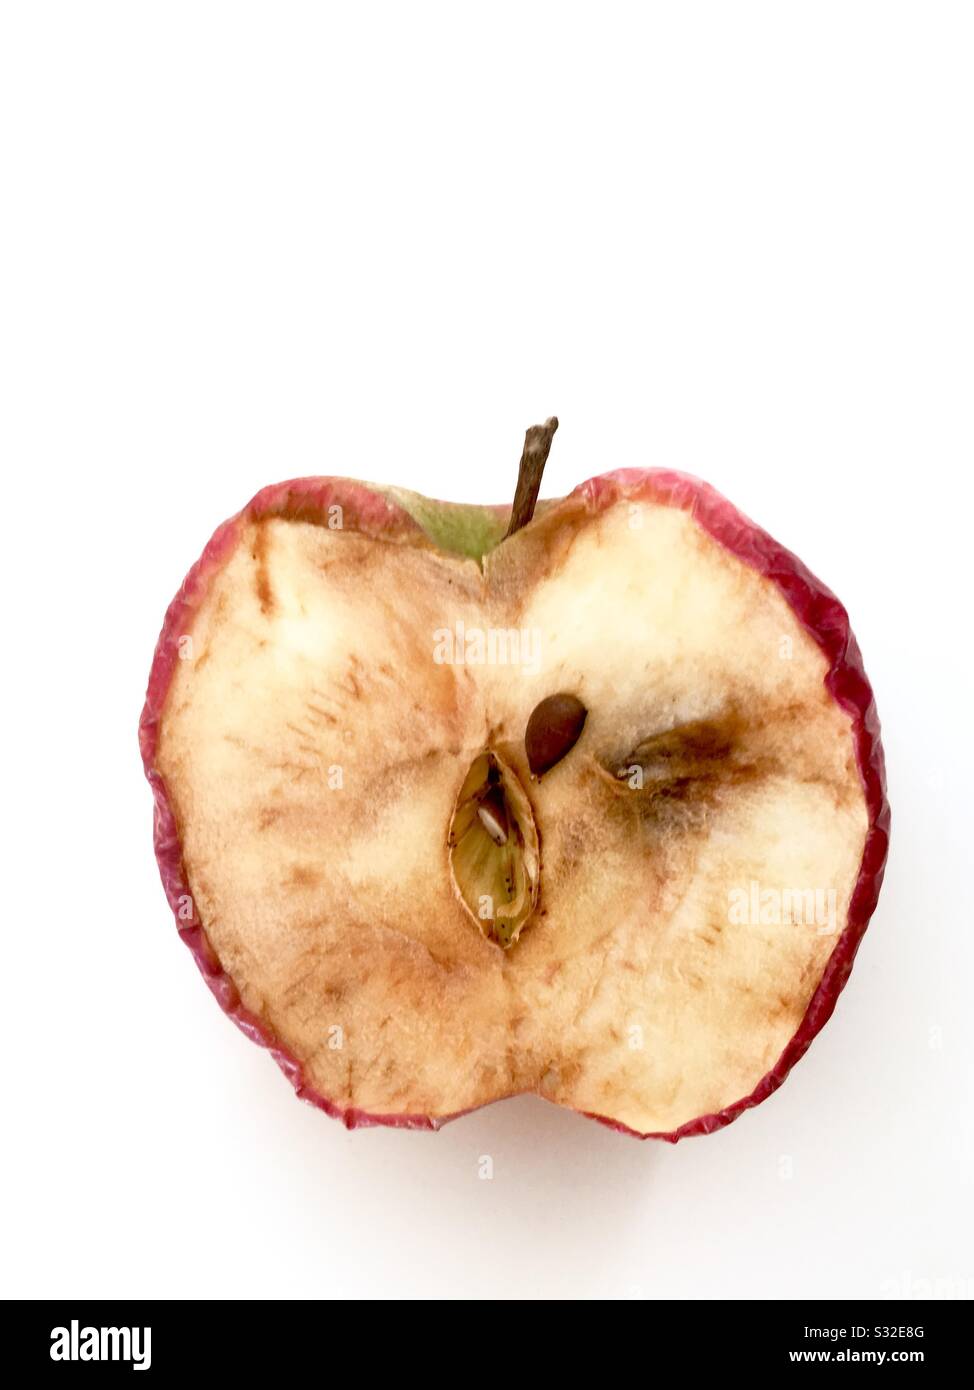 Rotten wrinkled apple Stock Photo